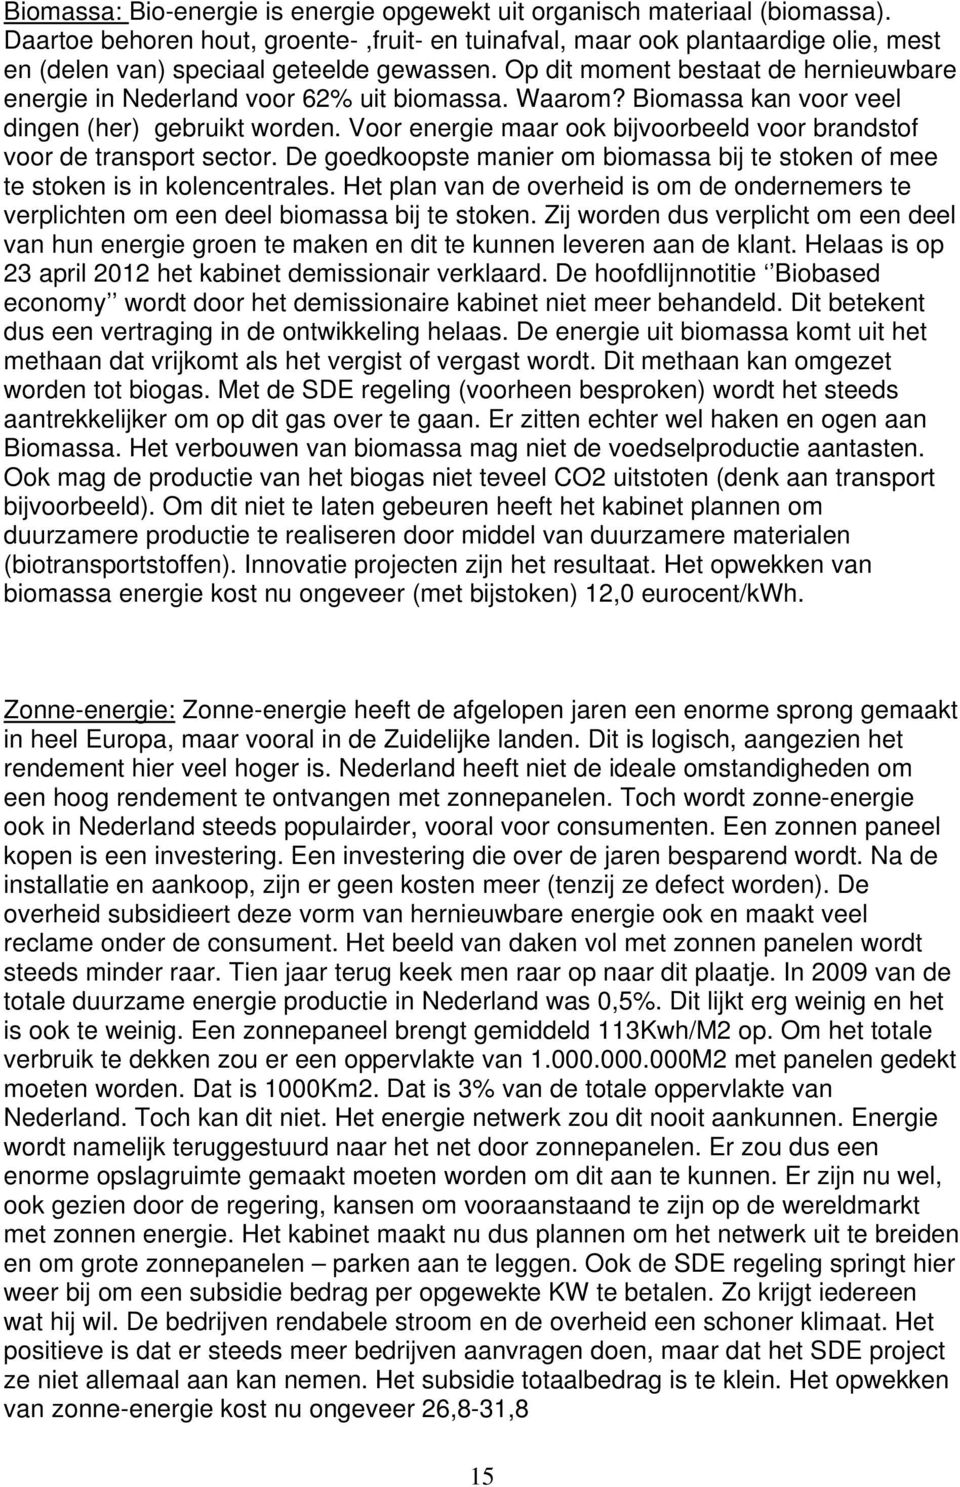 Op dit moment bestaat de hernieuwbare energie in Nederland voor 62% uit biomassa. Waarom? Biomassa kan voor veel dingen (her) gebruikt worden.